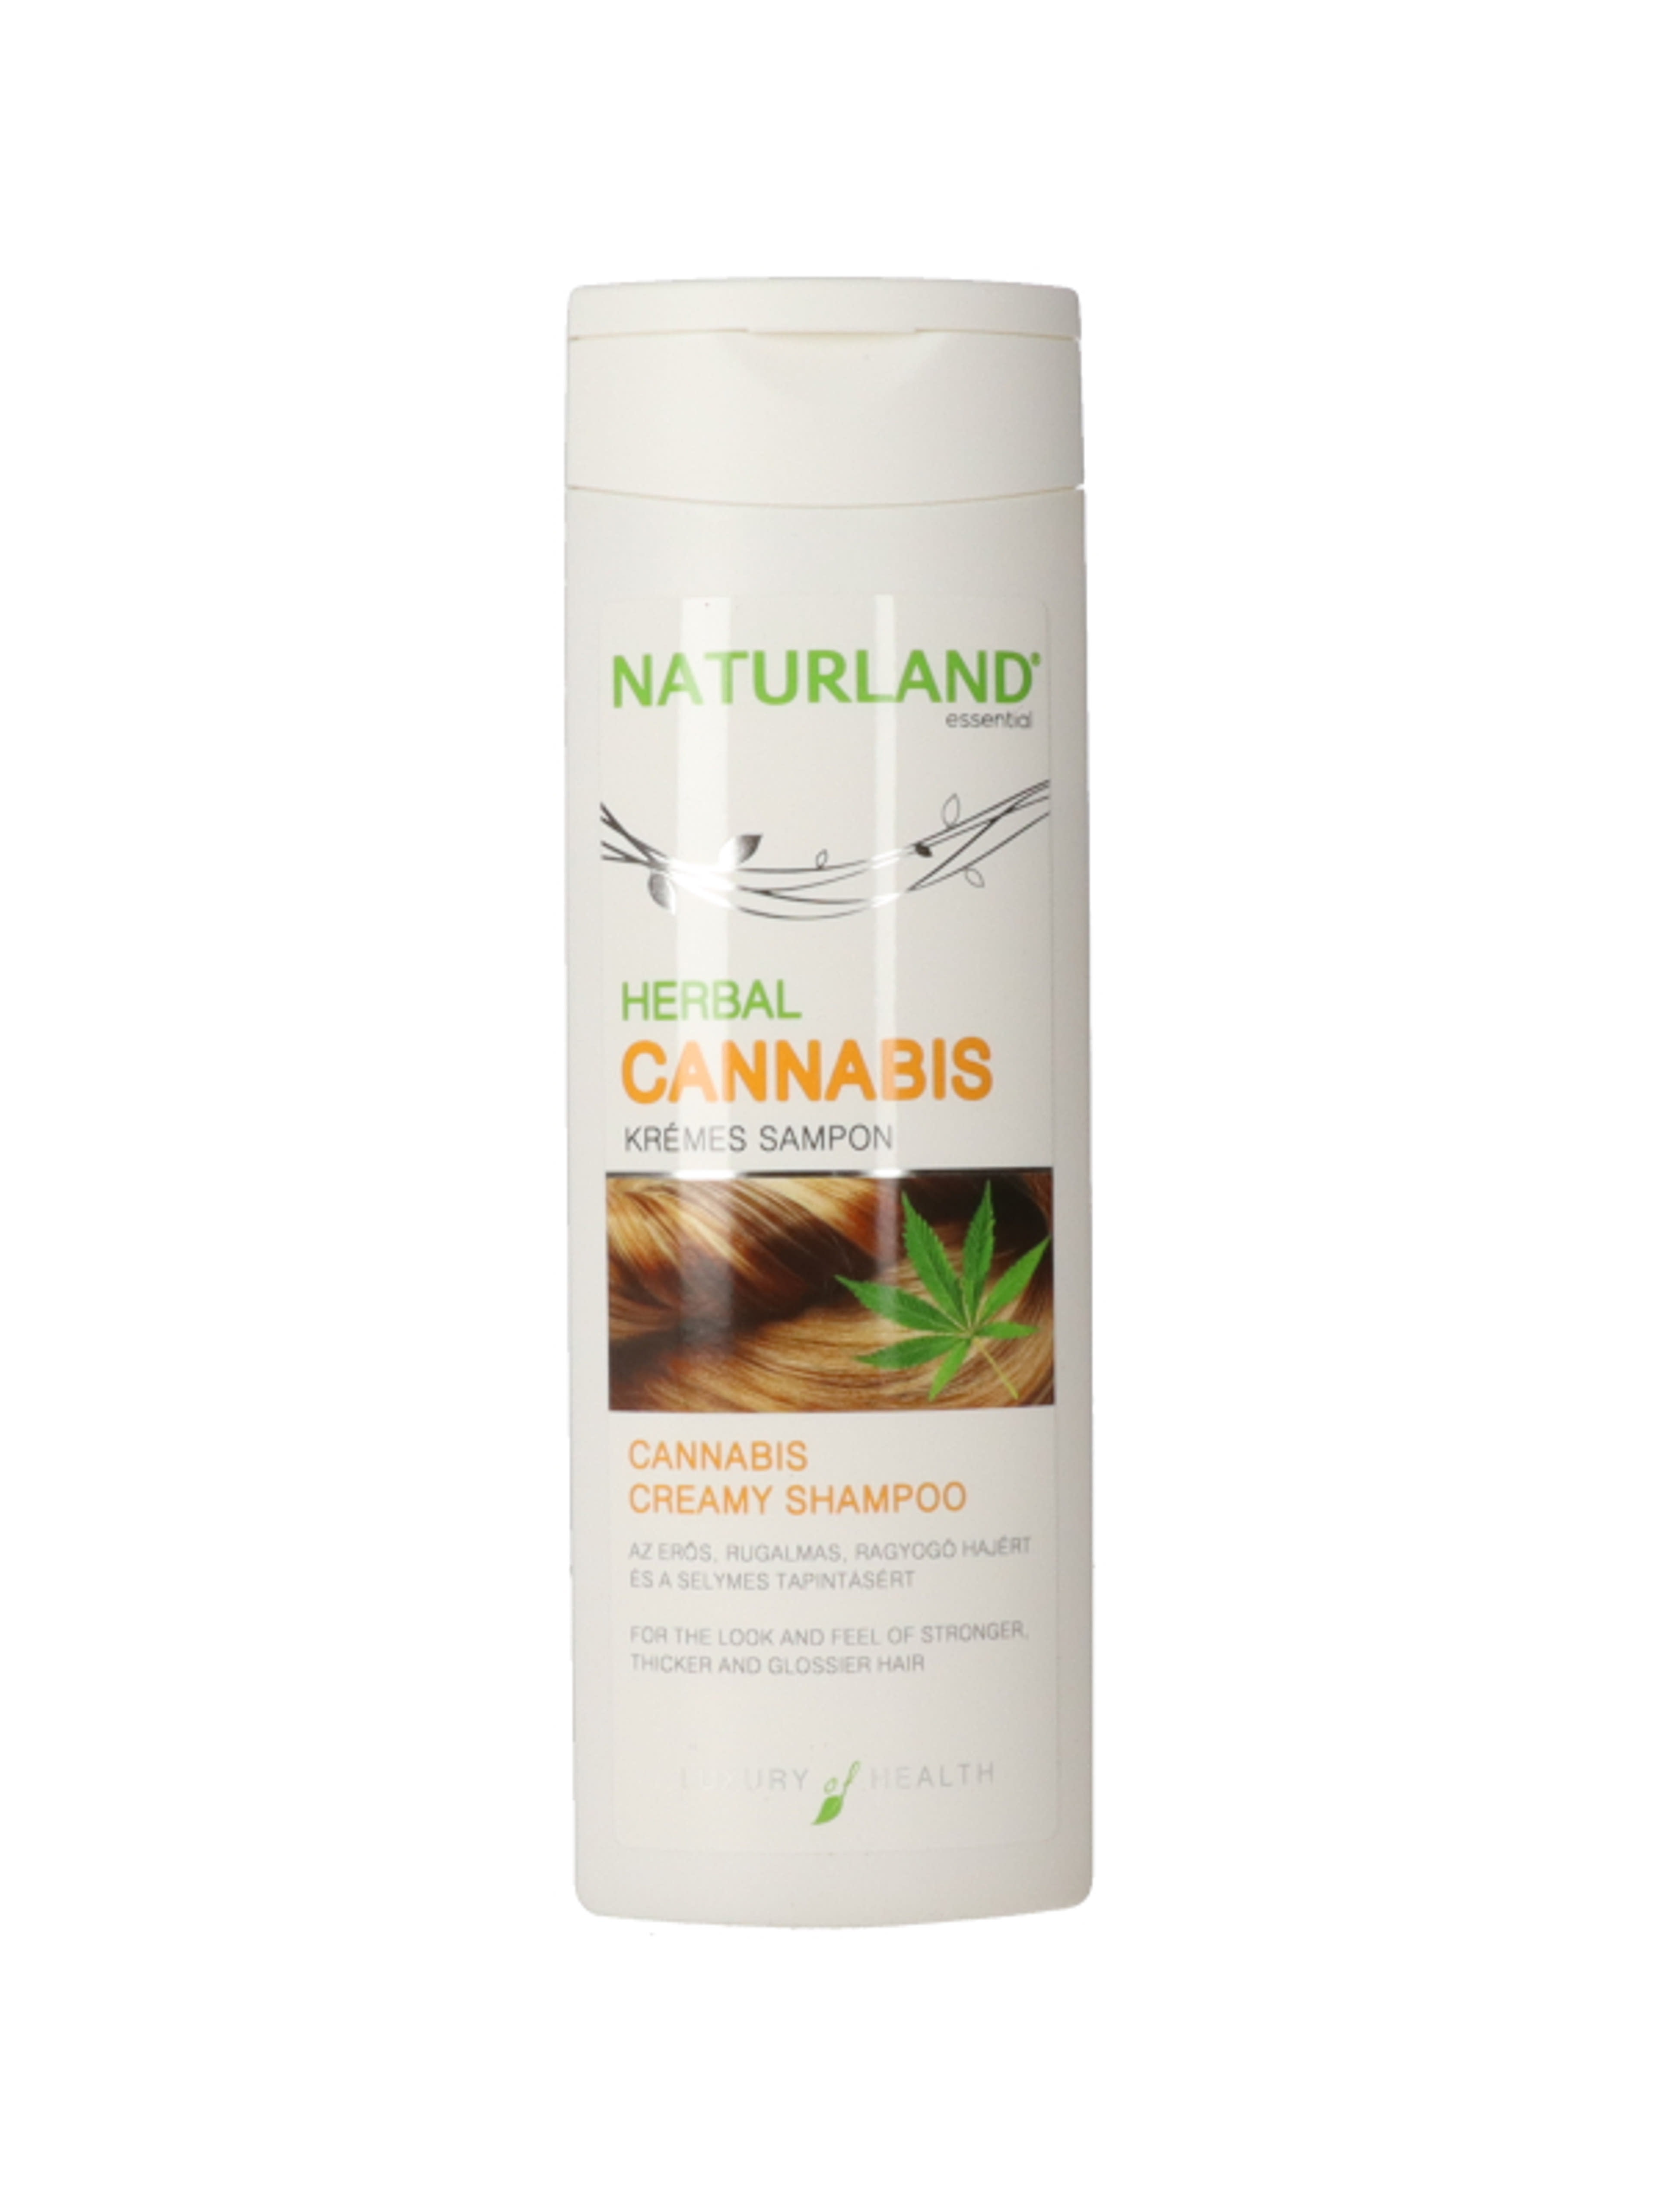 Naturland herbal cannabis krémes sampon - 200 ml